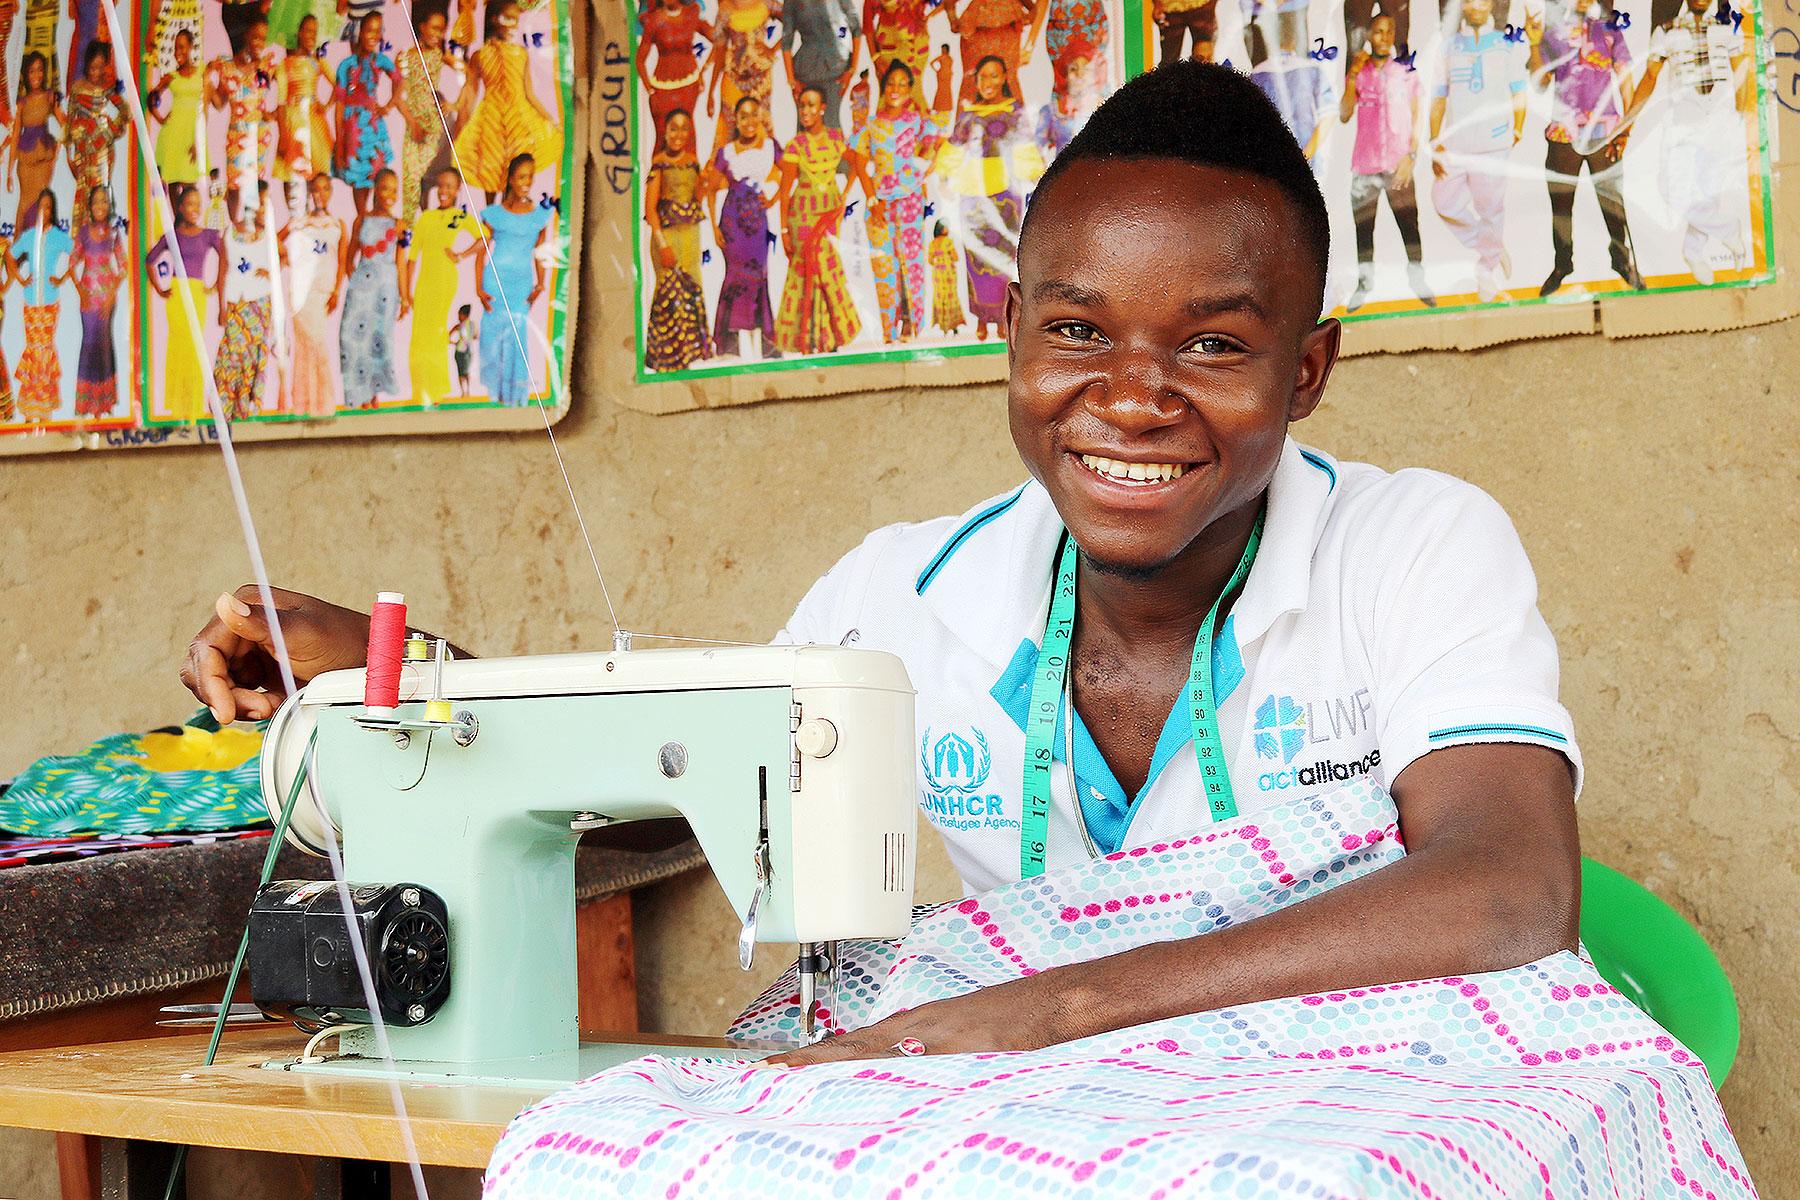 In Uganda leistet der LWB ebenfalls humanitäre Arbeit und unterstützt dort Menschen, die vor den Konflikten in den Nachbarländern Südsudan und DRK geflohen sind. In der Flüchtlingssiedlung Rwamwanja ist der Kongolese Zubert Masuku inzwischen ein anerkannter Modedesigner, der Jugendlichen außerdem eine kostenlose Ausbildung anbietet. Foto: LWB/S. Gallay